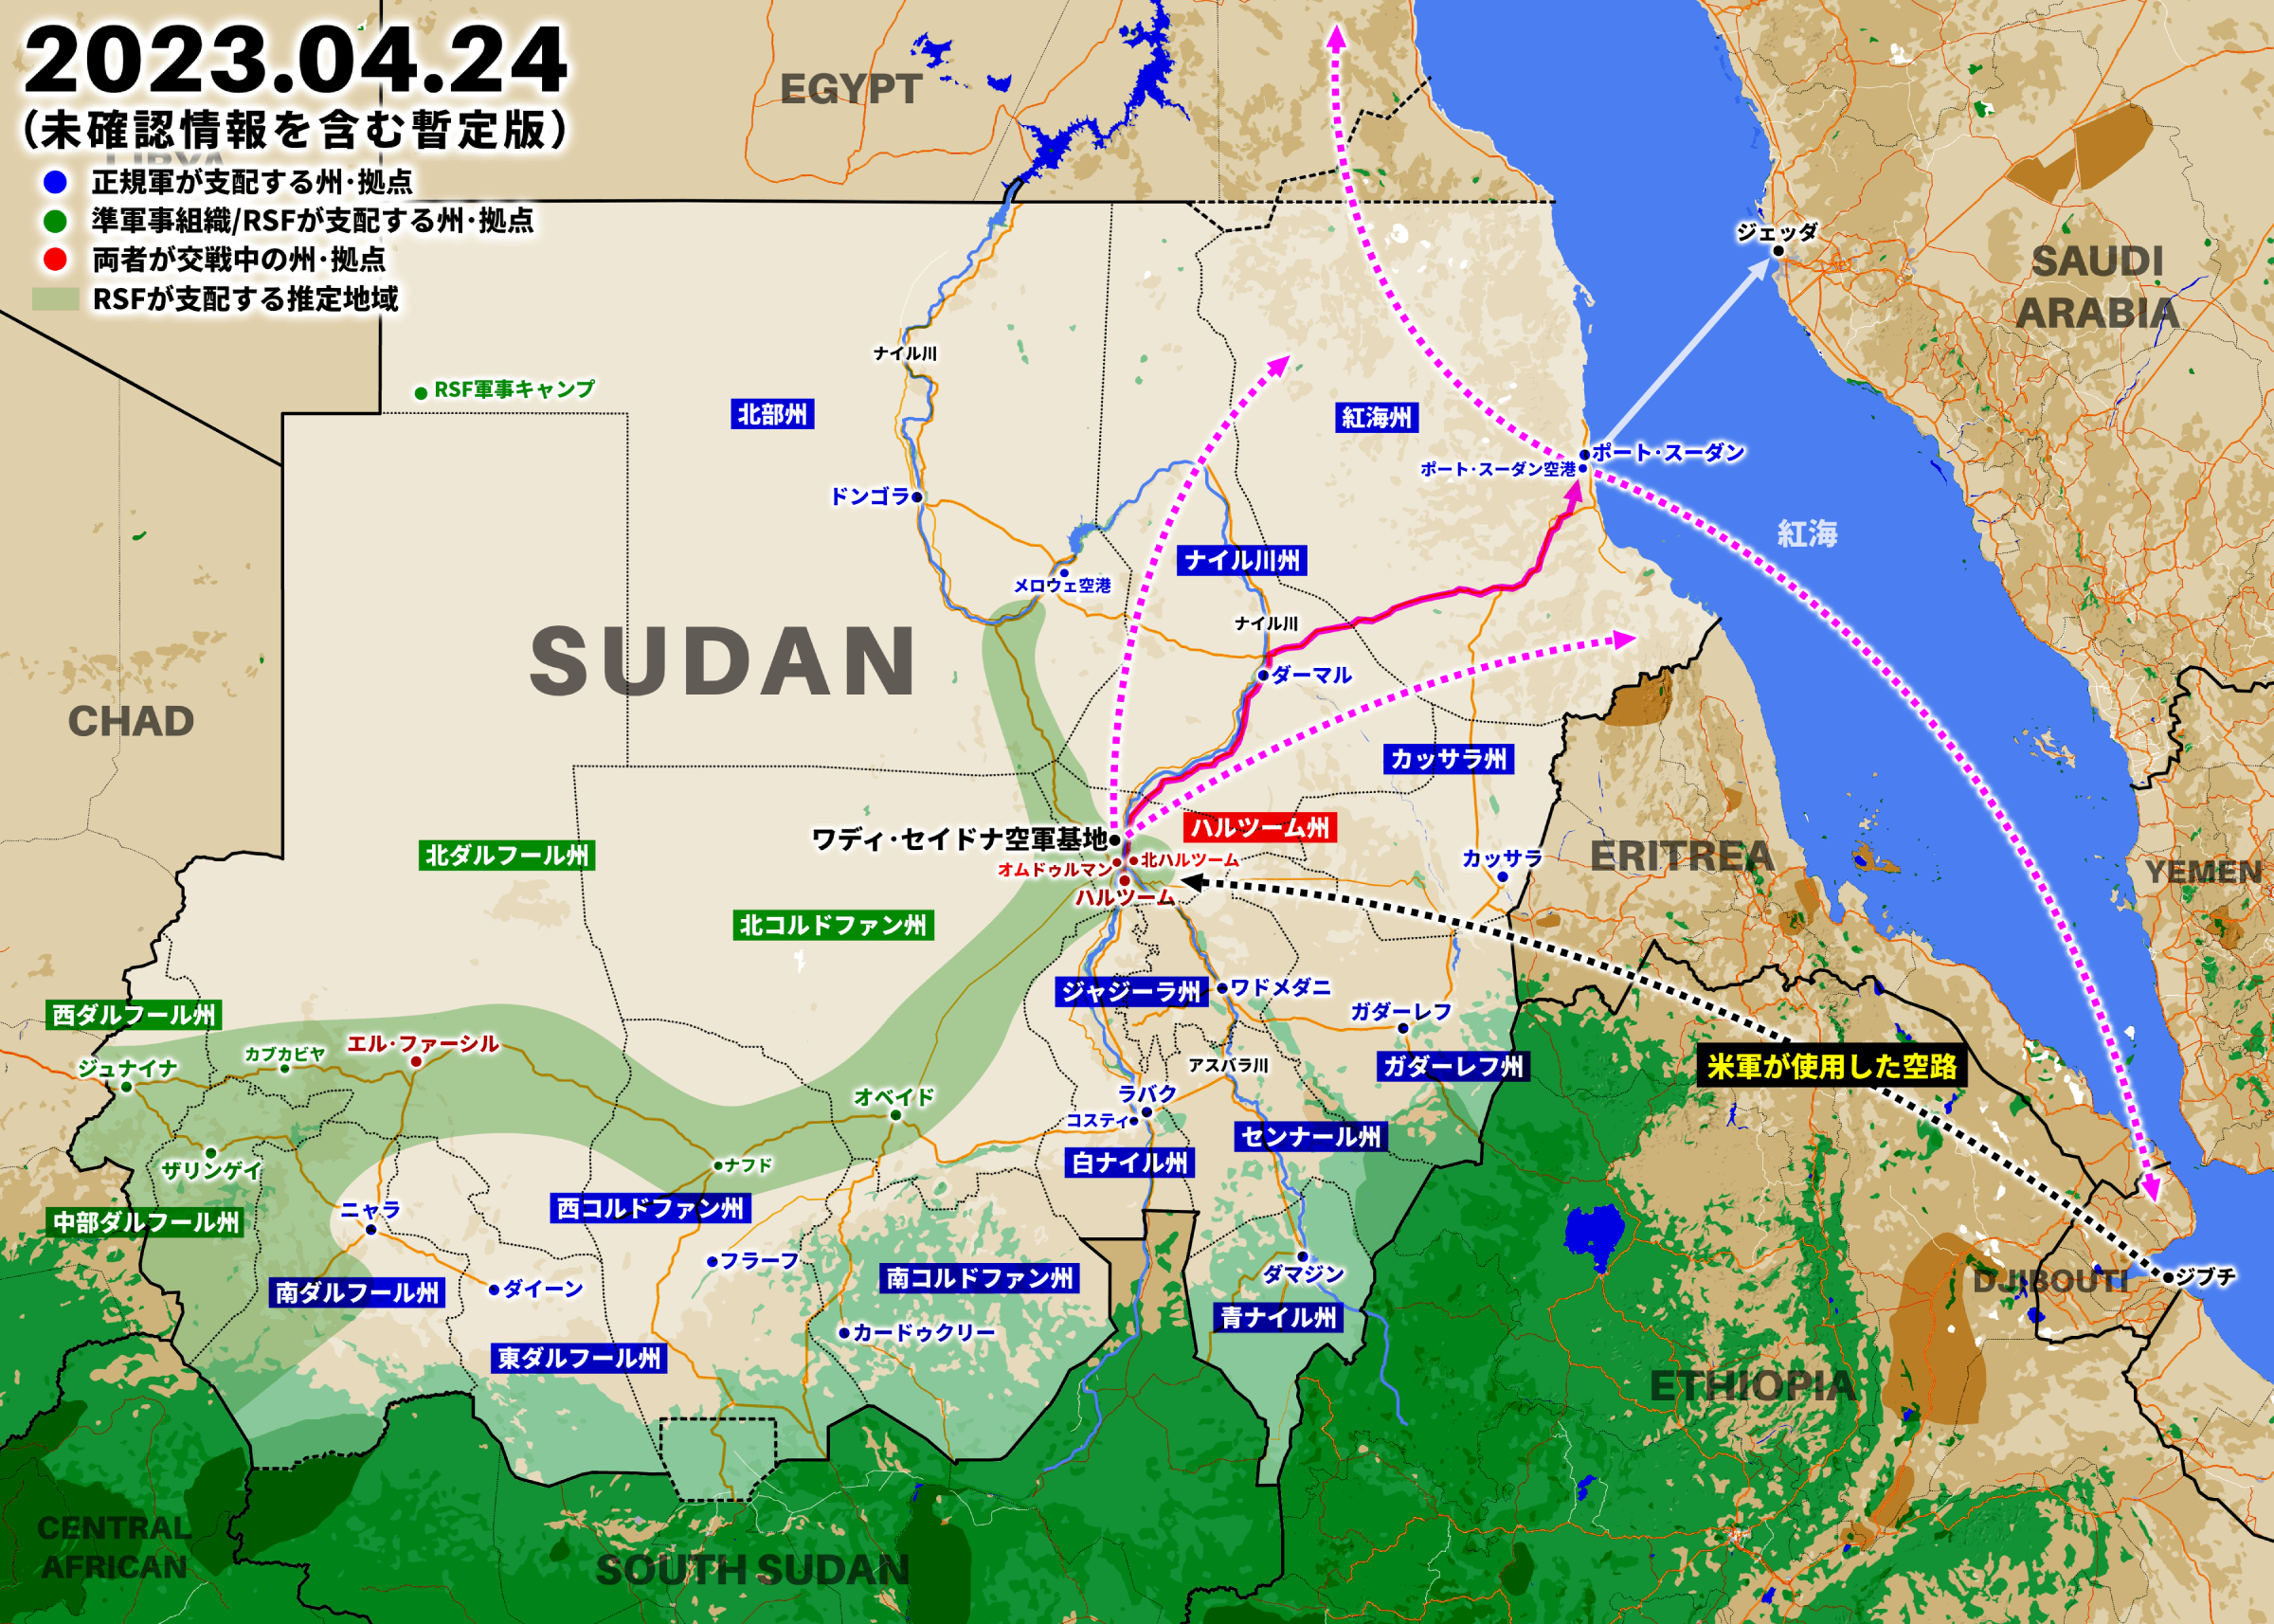 空自C-2がジブチを離陸、ポート･スーダン空港に向かった可能性が高い